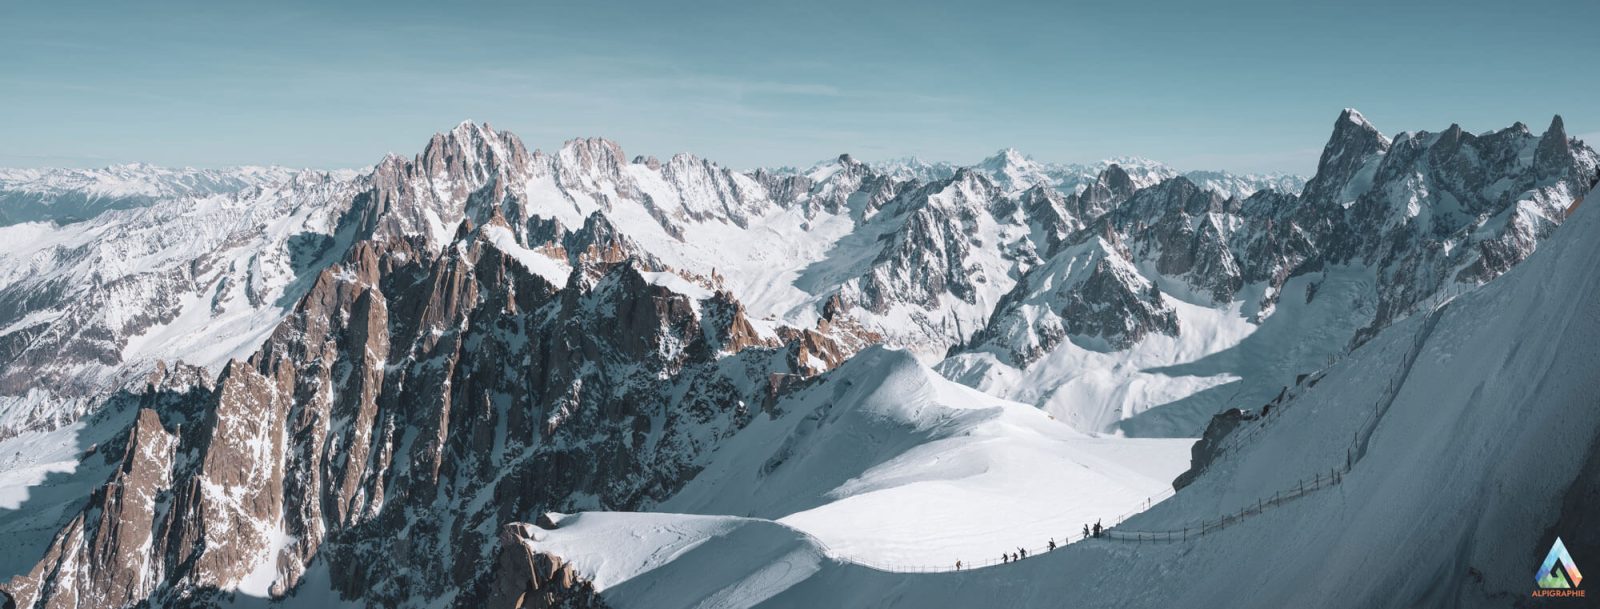 Chamonix Mont Blanc - View from L'aiguille du midi